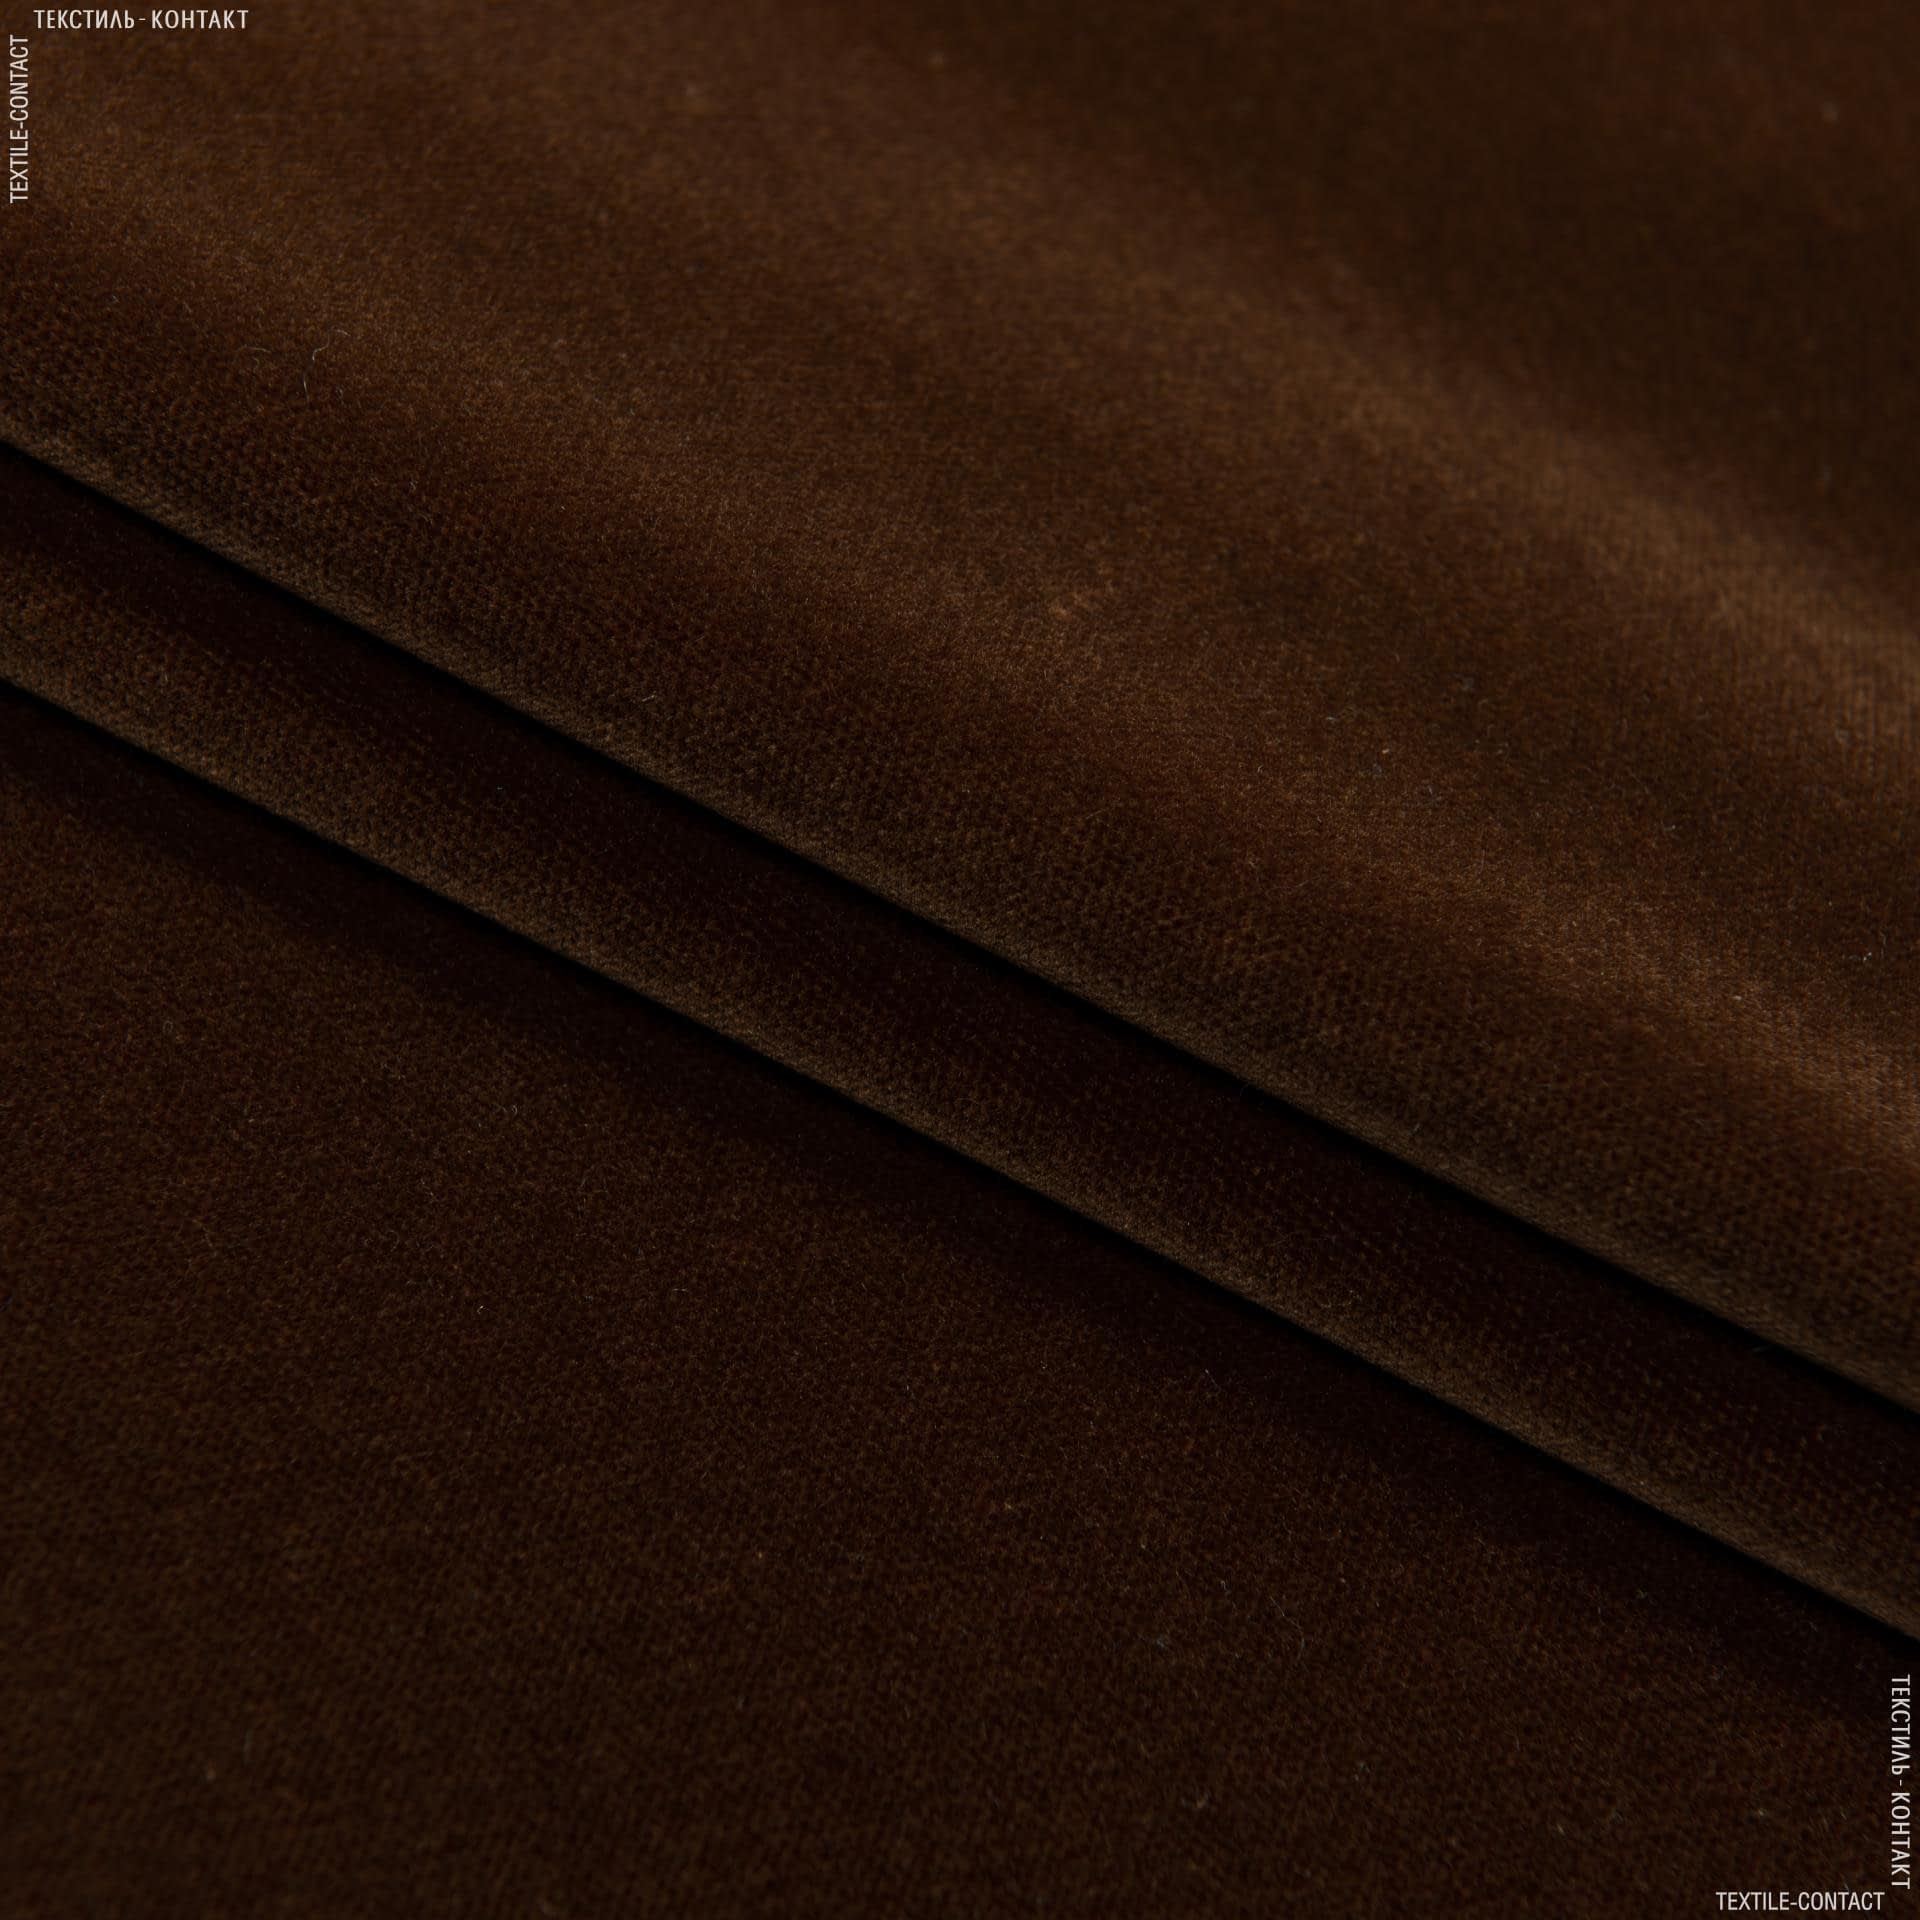 Тканини театральні тканини - Велюр Новара / NOVARA сток, коричневий